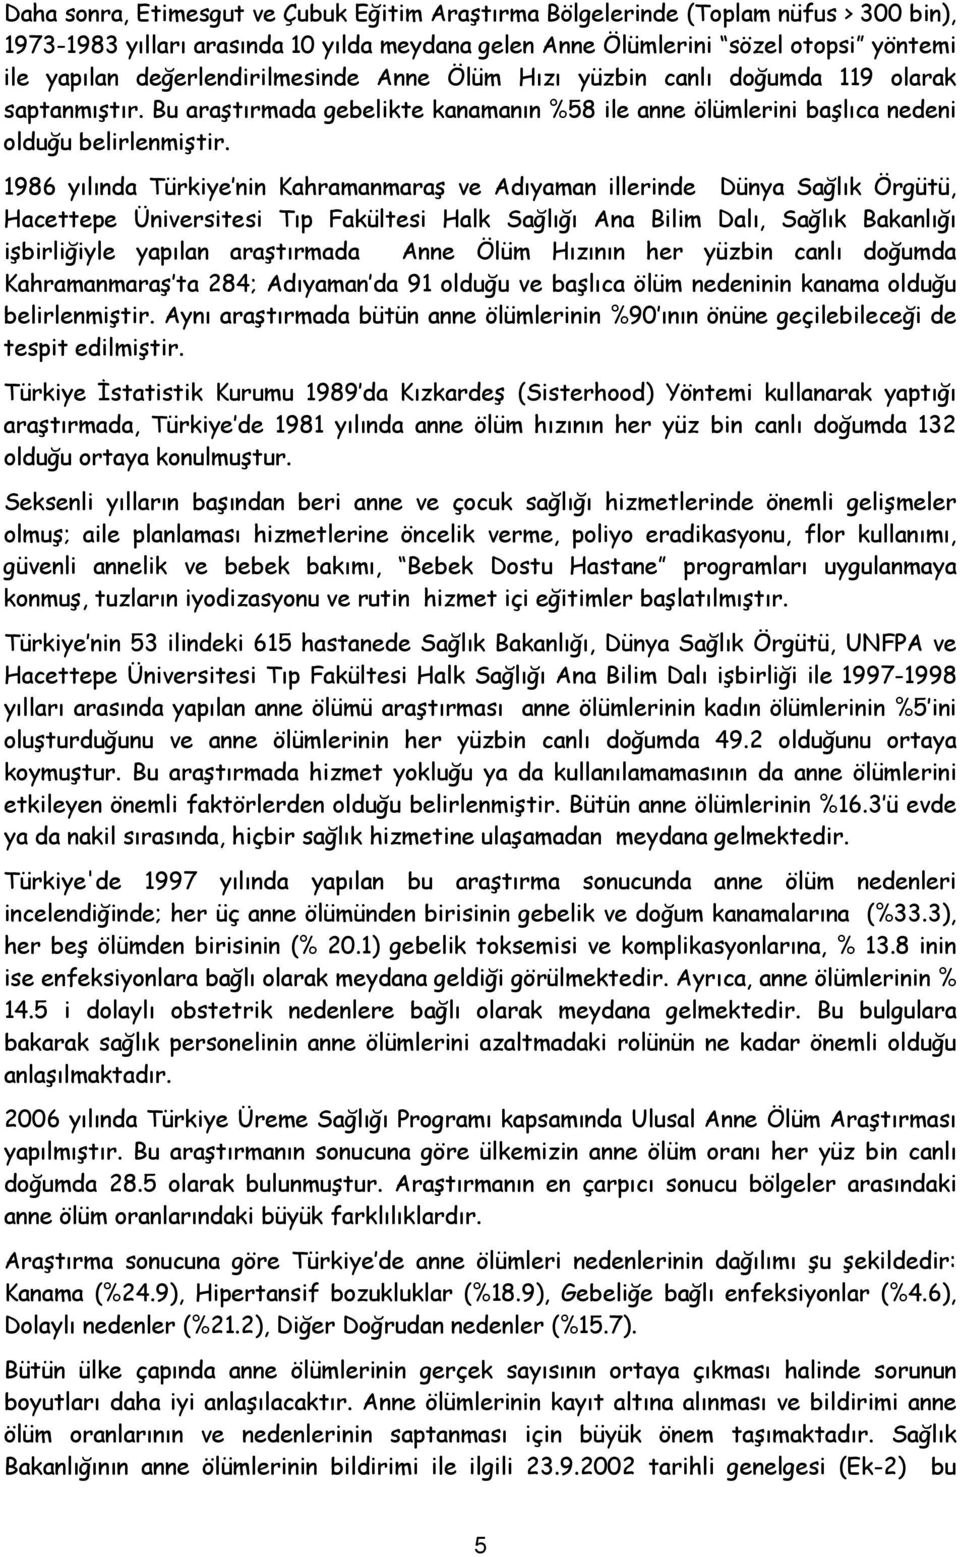 1986 yılında Türkiye nin Kahramanmaraş ve Adıyaman illerinde Dünya Sağlık Örgütü, Hacettepe Üniversitesi Tıp Fakültesi Halk Sağlığı Ana Bilim Dalı, Sağlık Bakanlığı işbirliğiyle yapılan araştırmada